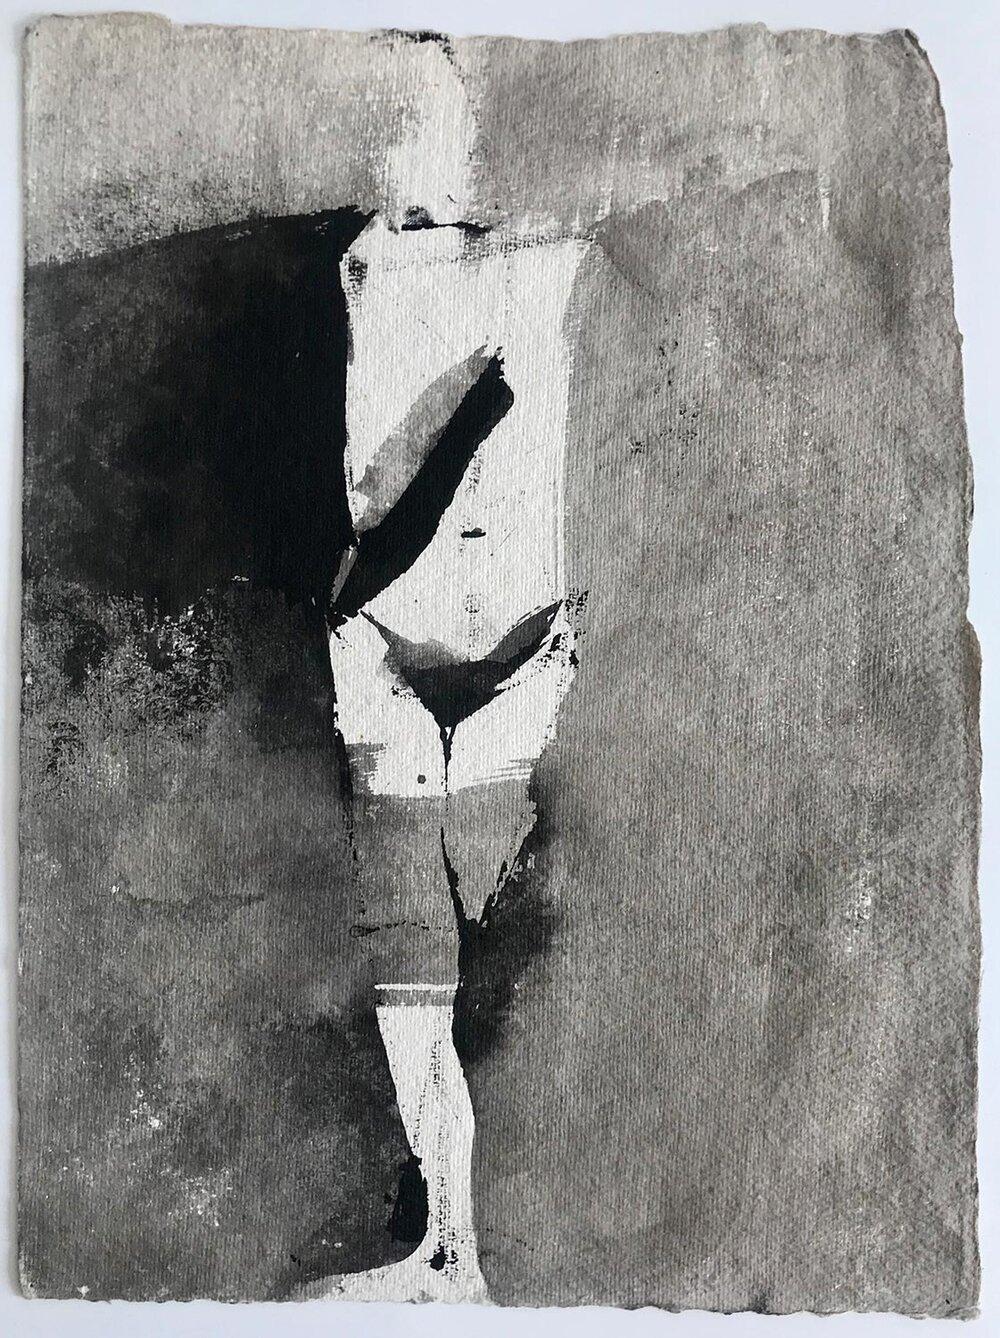 Abstract Painting Matt Kinney - Figure A7, Beacon, NY, 2002